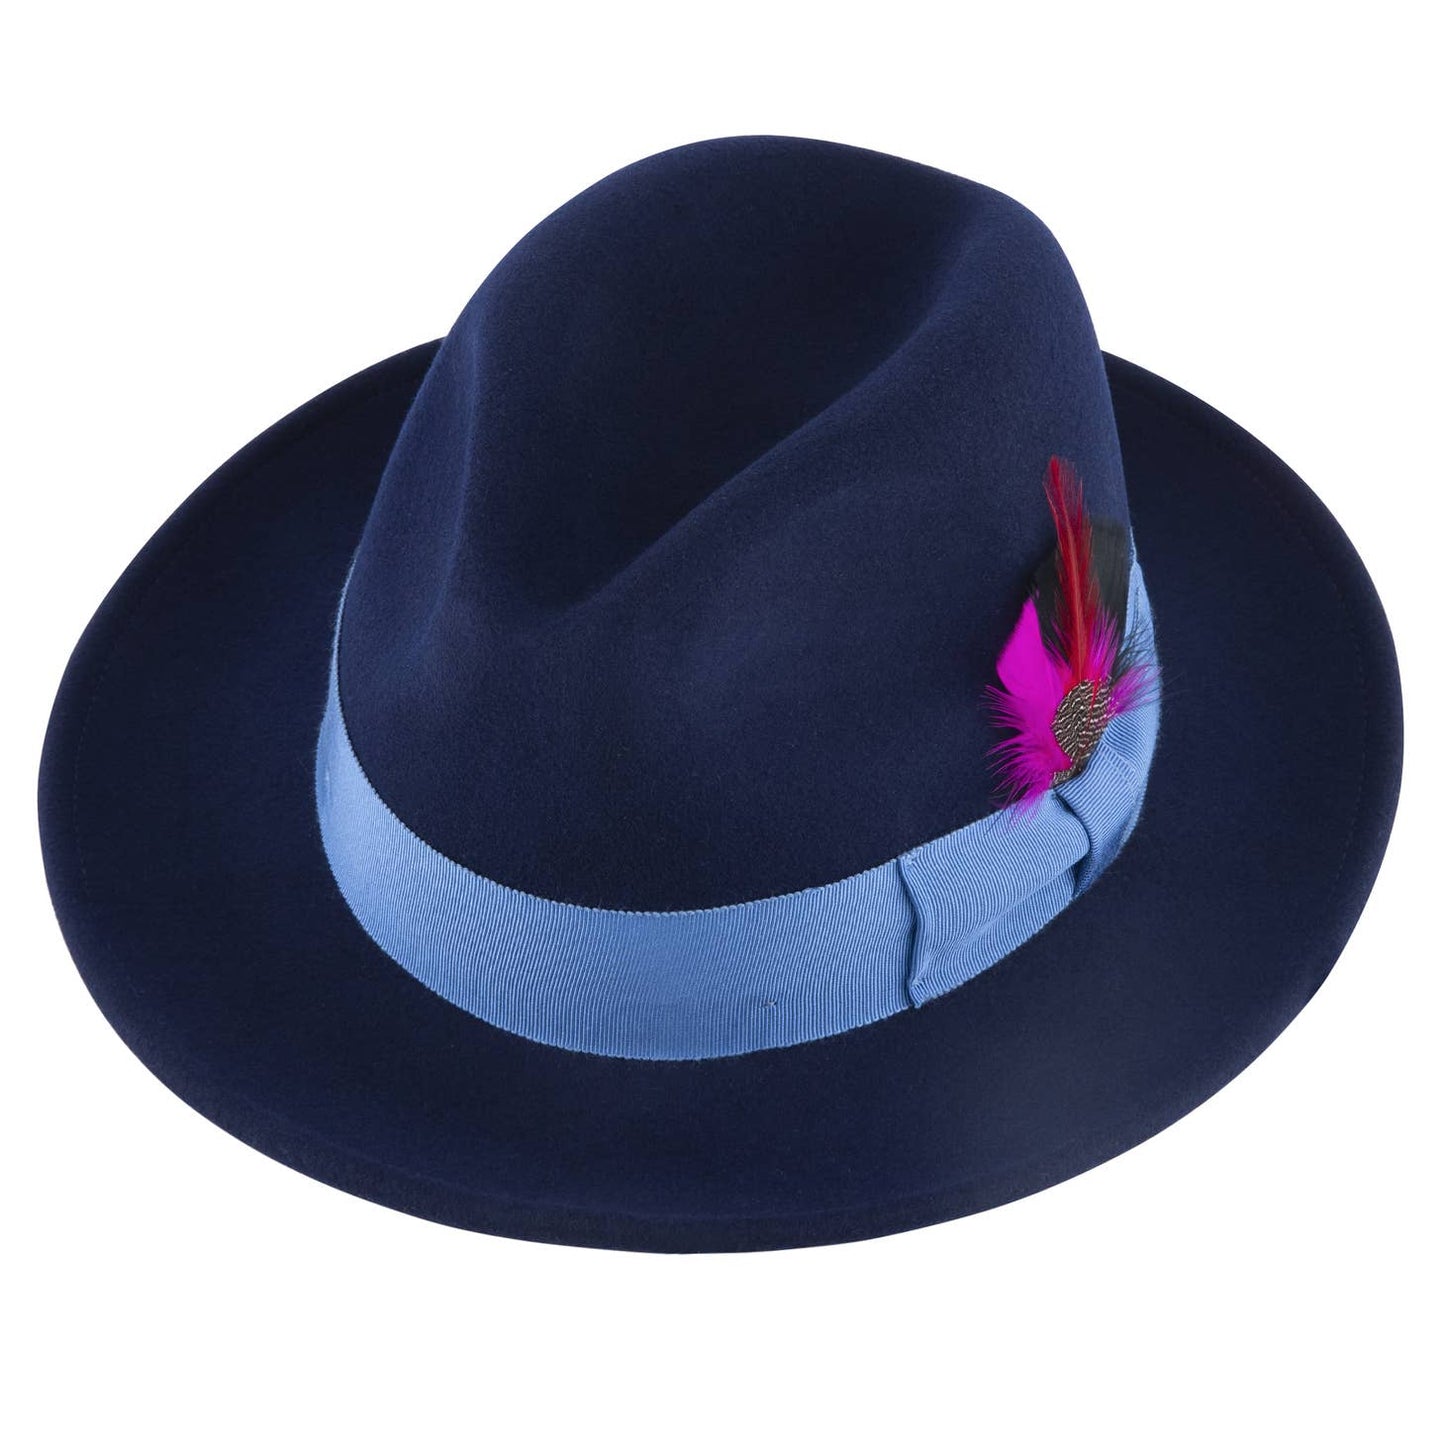 Bel-Air | Classic Wool Felt Fedora Hat